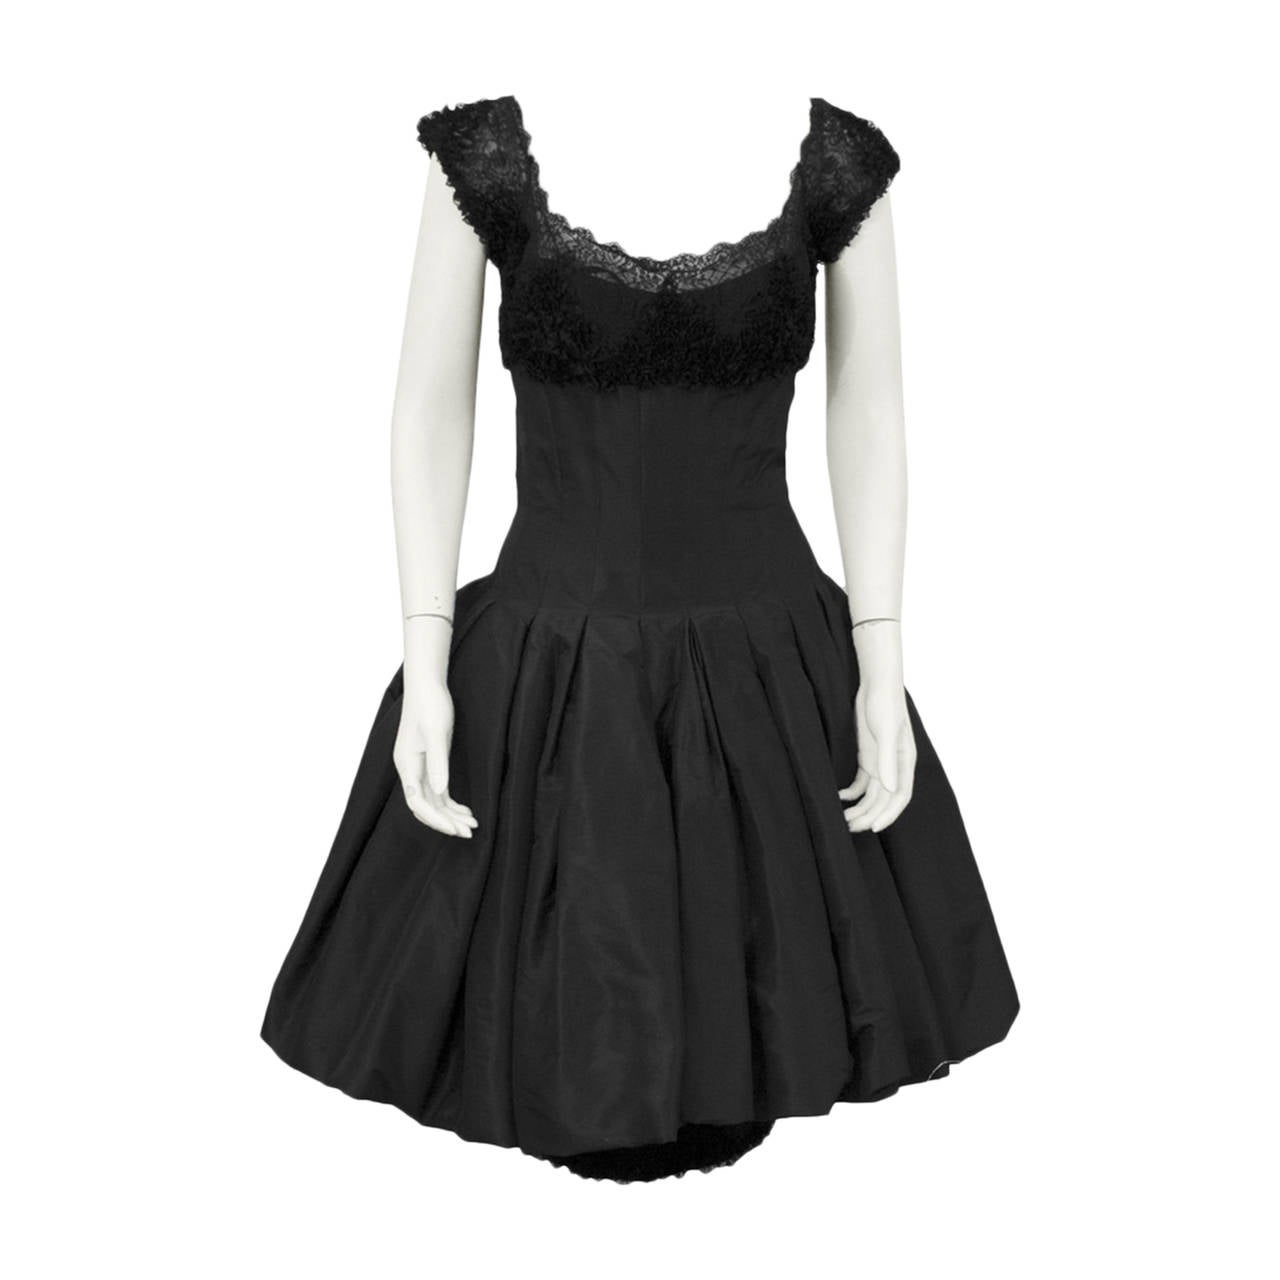 Mignon Black Silk Dress with Lace Bodice Circa 1960's For Sale